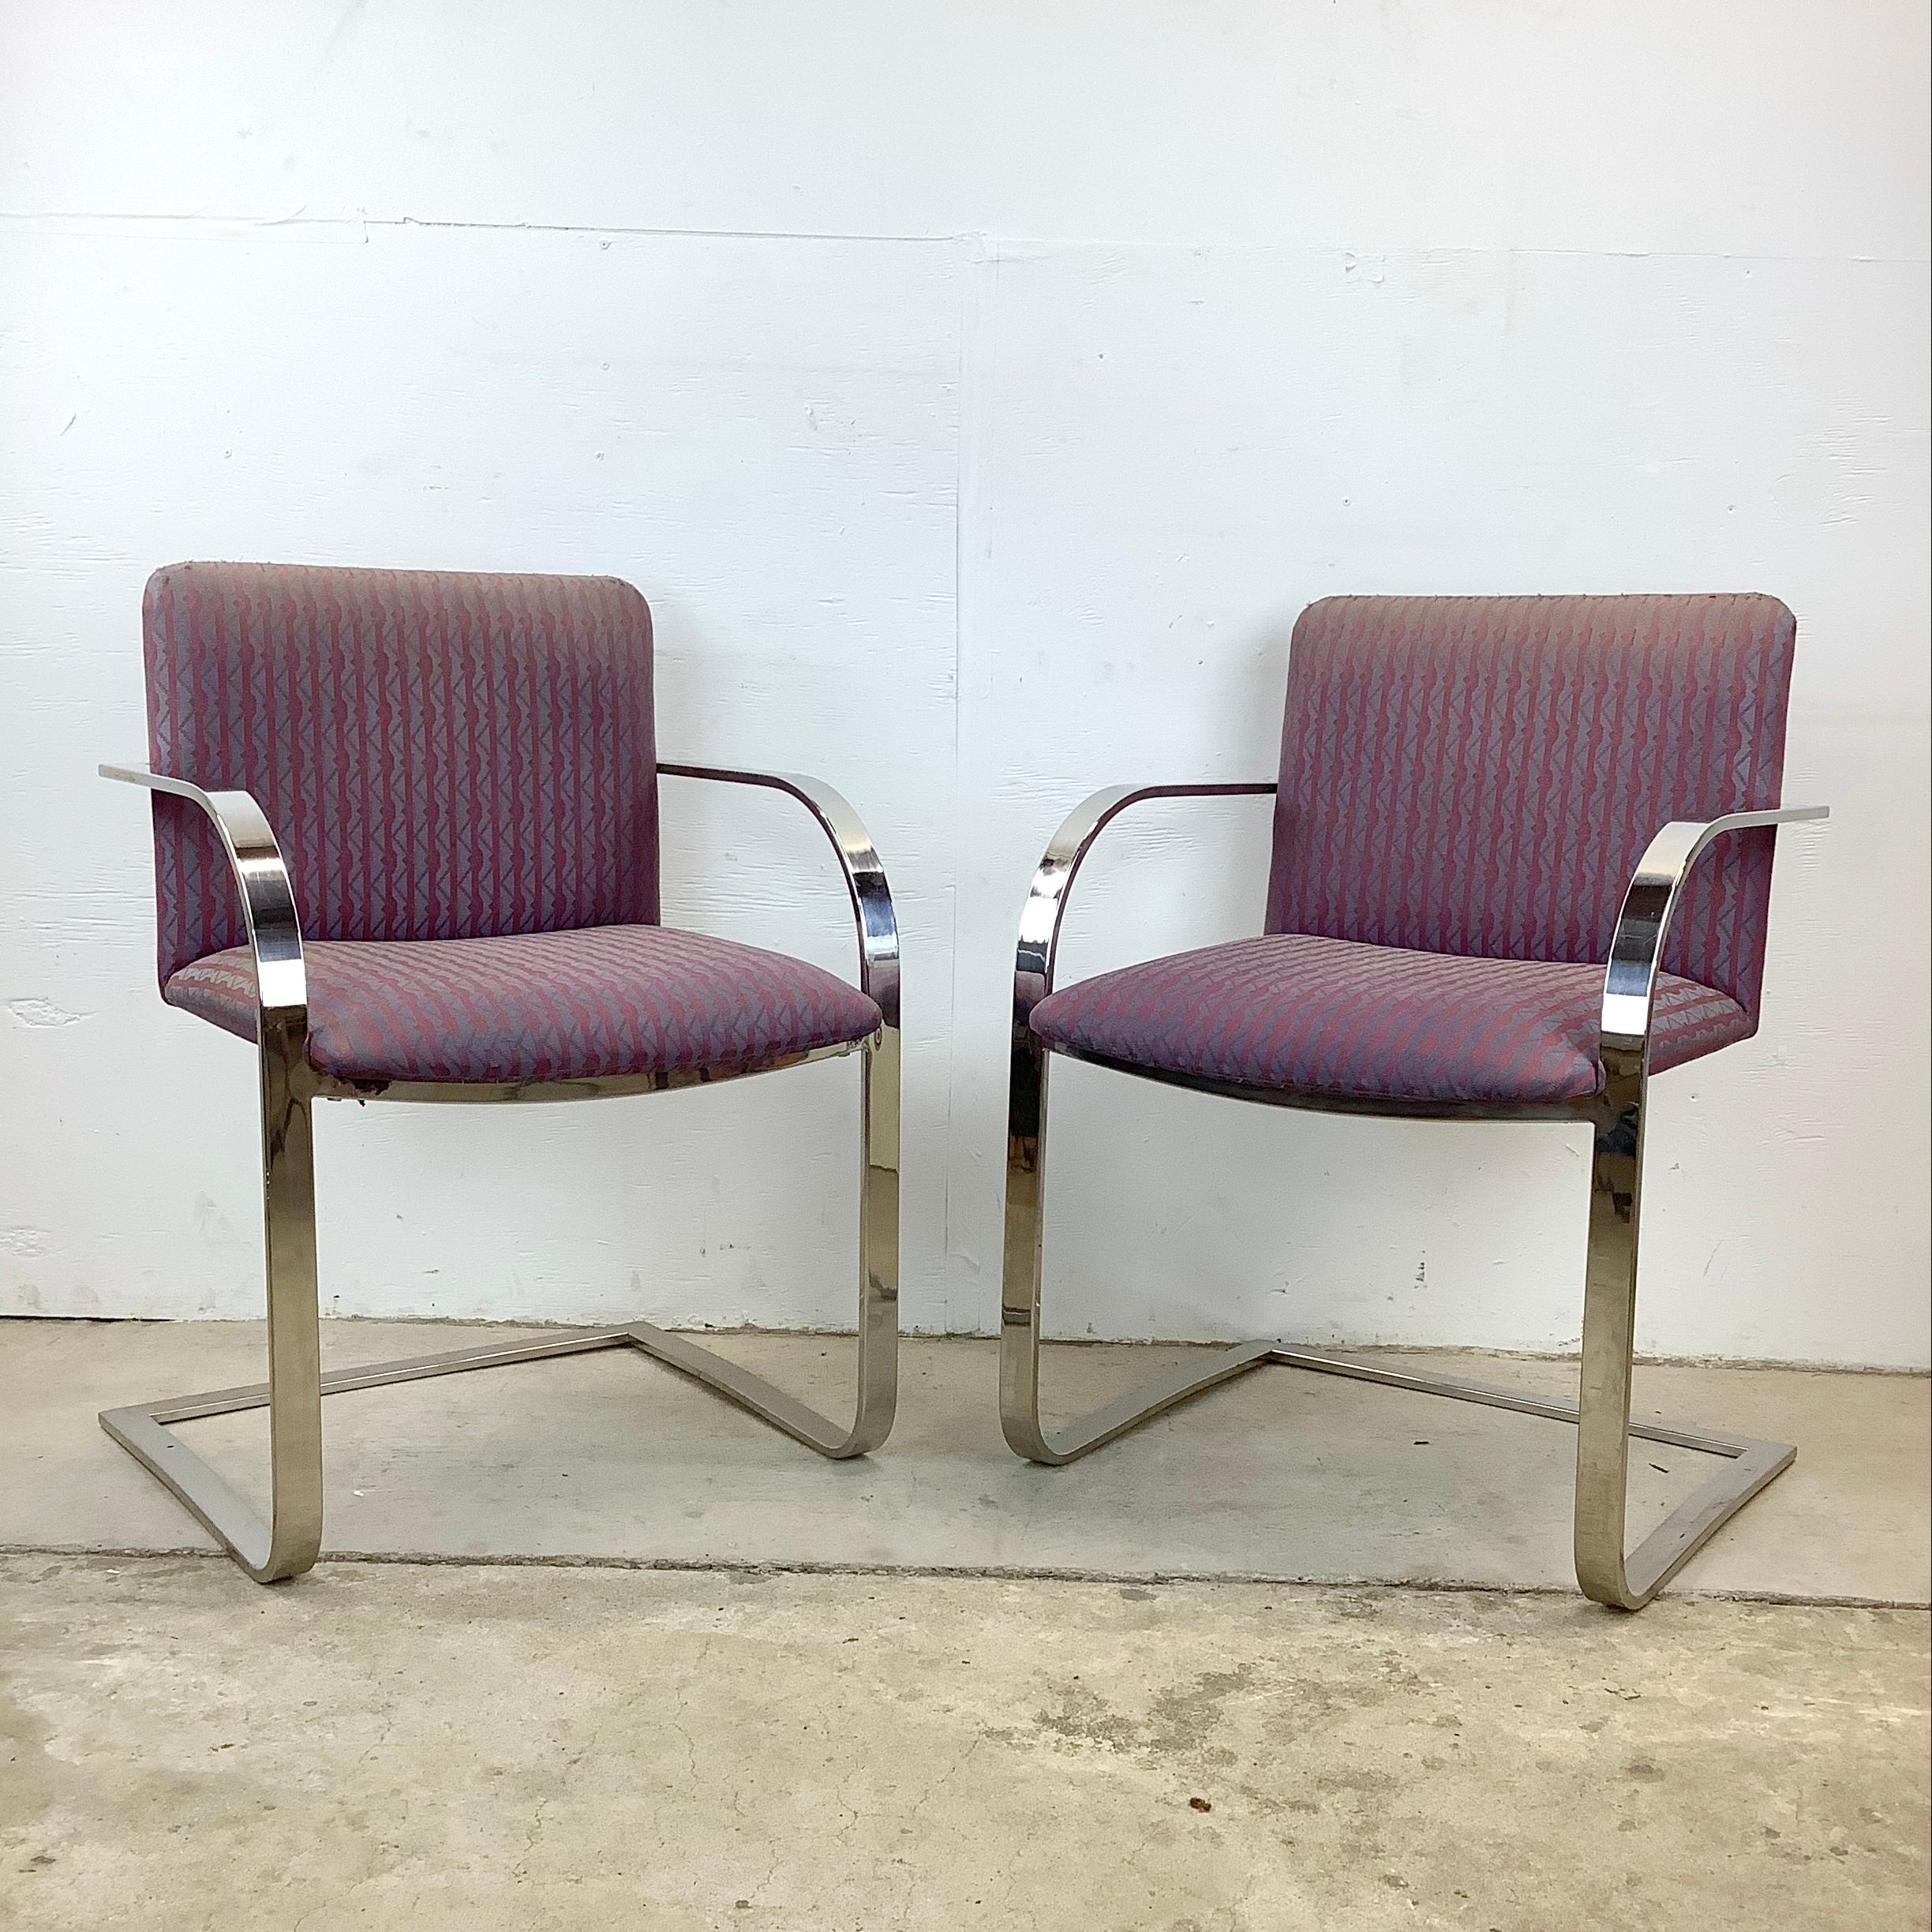 Dieses Paar passender flacher Barstühle im Vintage Brno-Stil wurde mit einer Anspielung auf den legendären Mies van der Rohe entworfen. Diese komfortablen und markanten Stühle verkörpern das minimalistische Ethos des Bauhaus und des